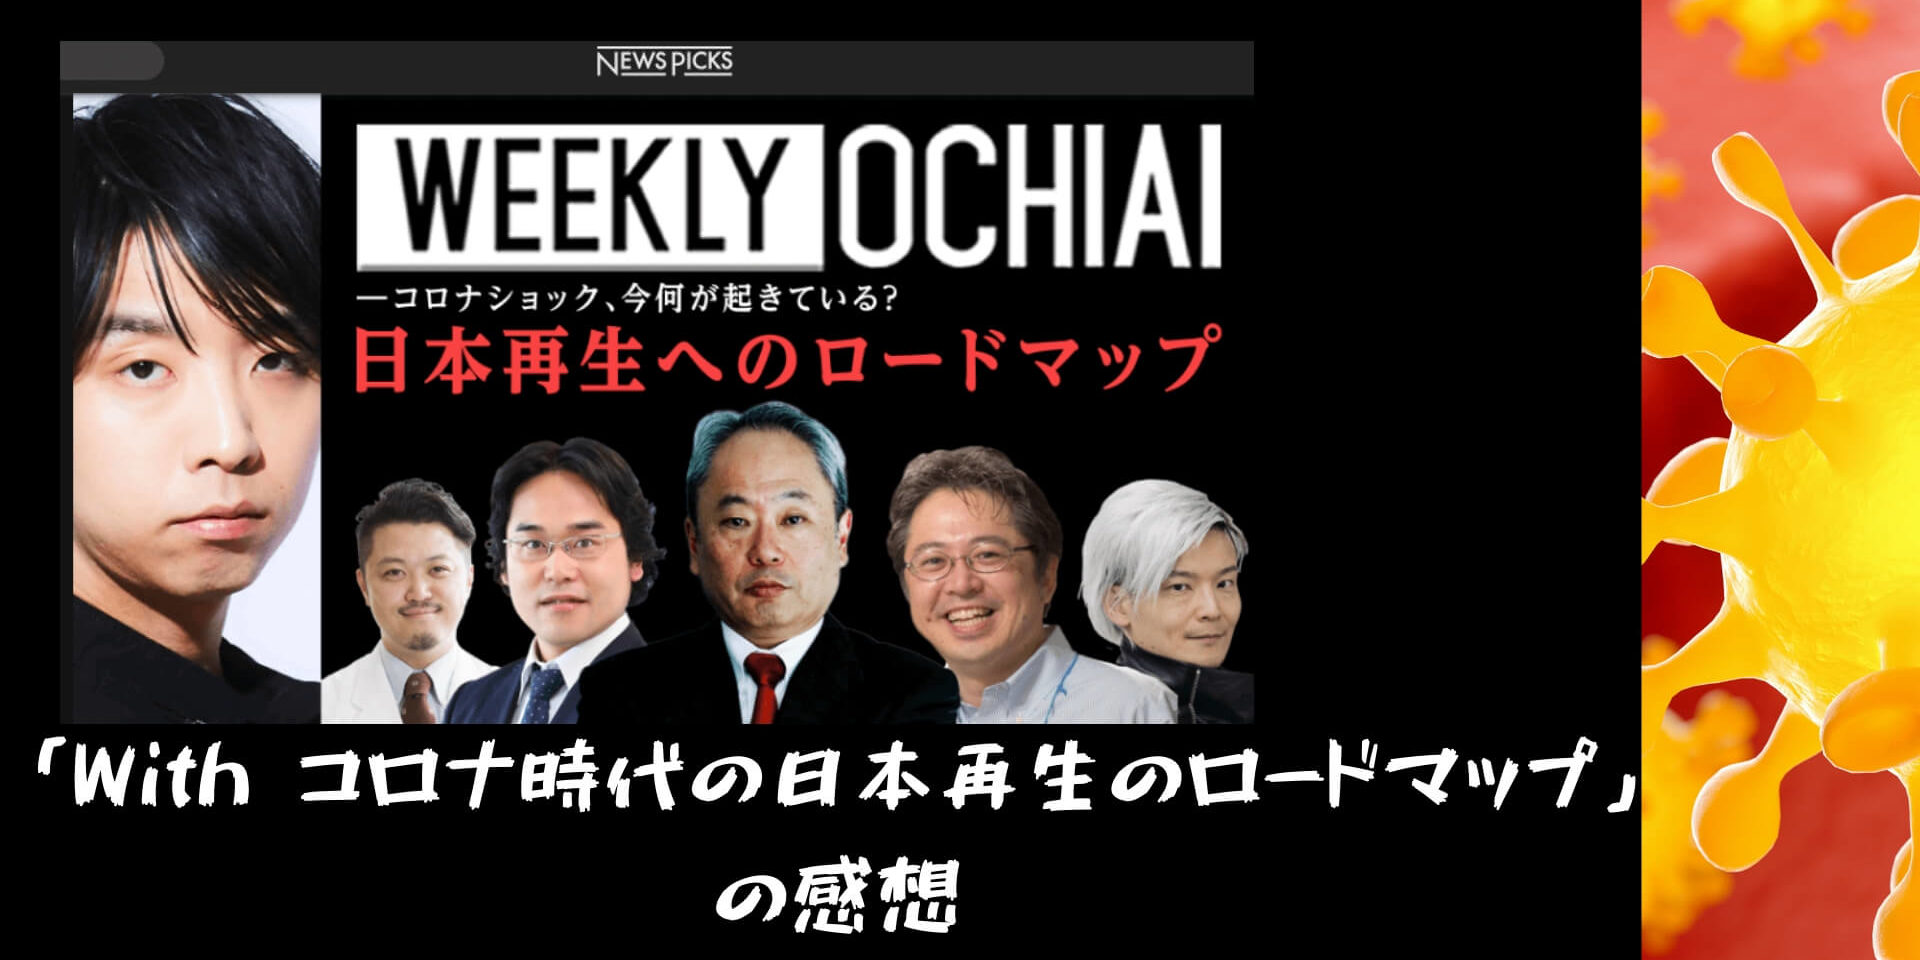 「With コロナ時代の日本再生のロードマップ」のまとめと感想_Newspicks【落合陽一さんのWEEKLY OCHIAI】